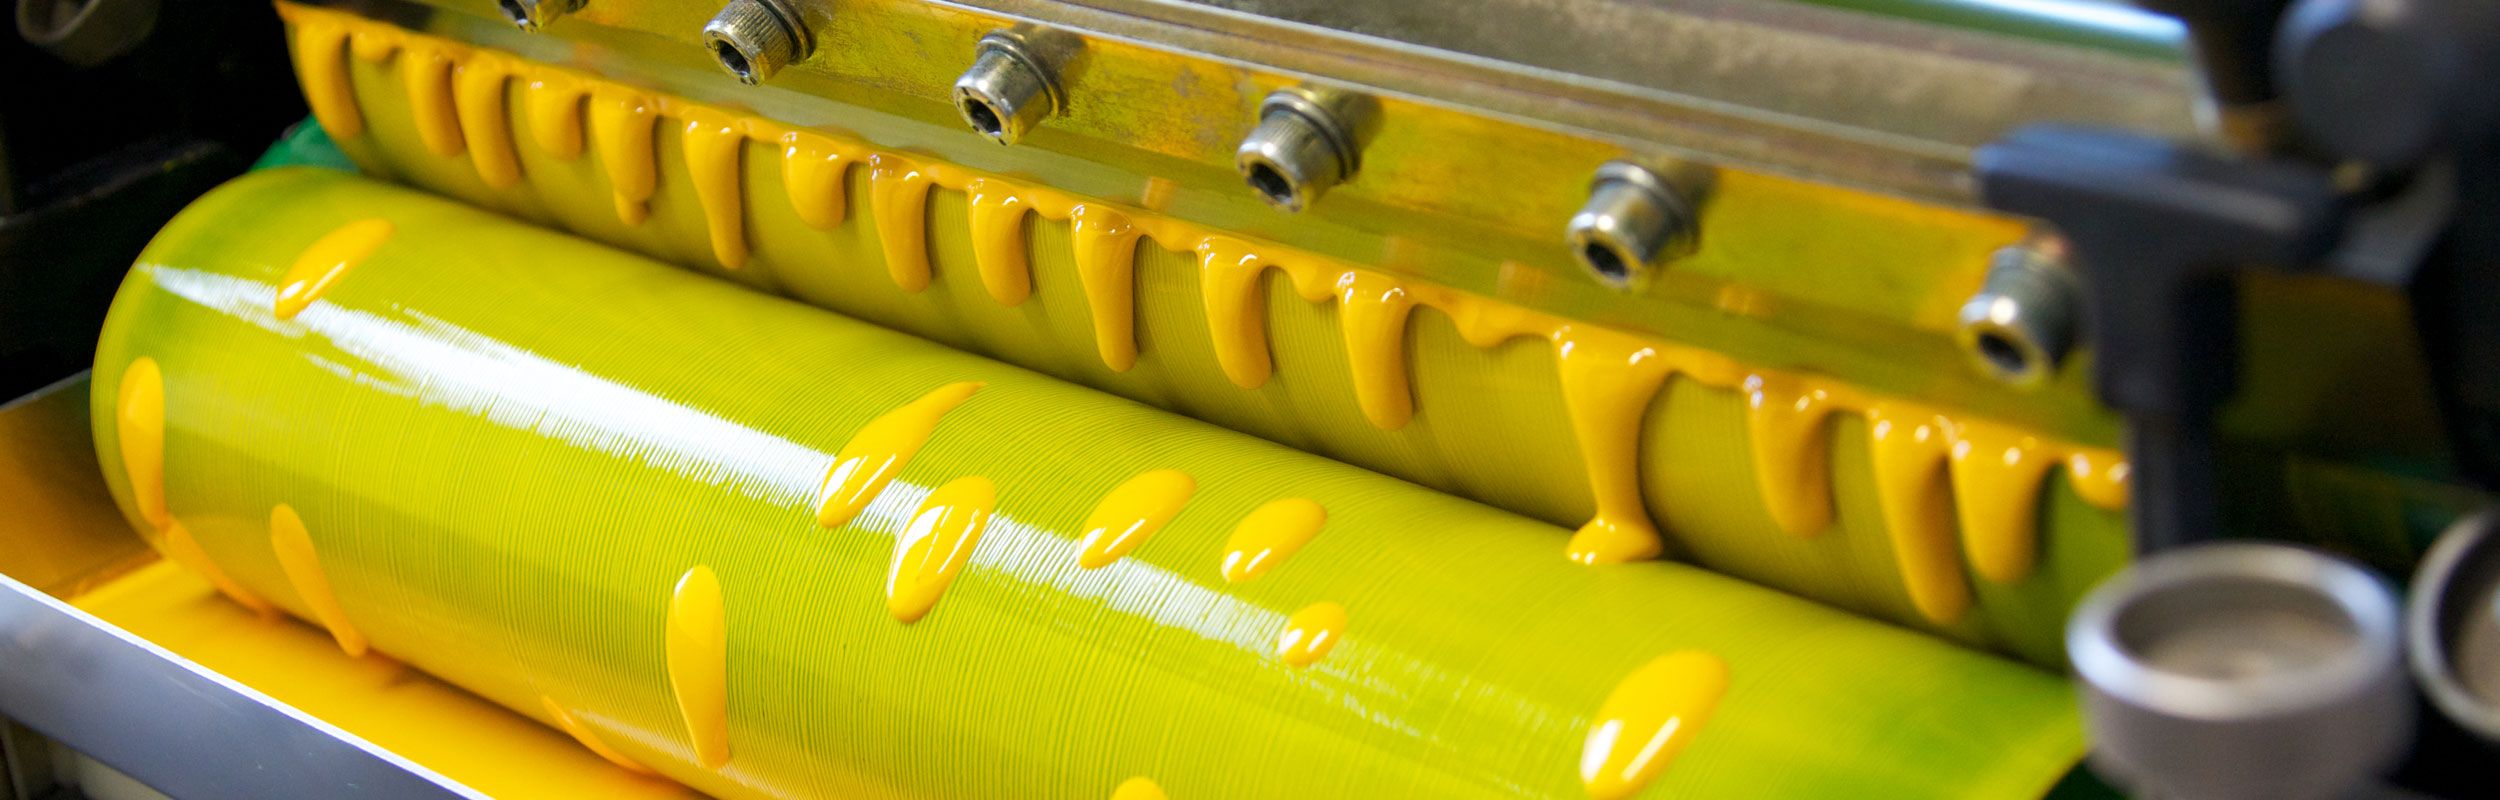 Druckwerk mit Farbwanne, Rakel und Tauchwalze gelb